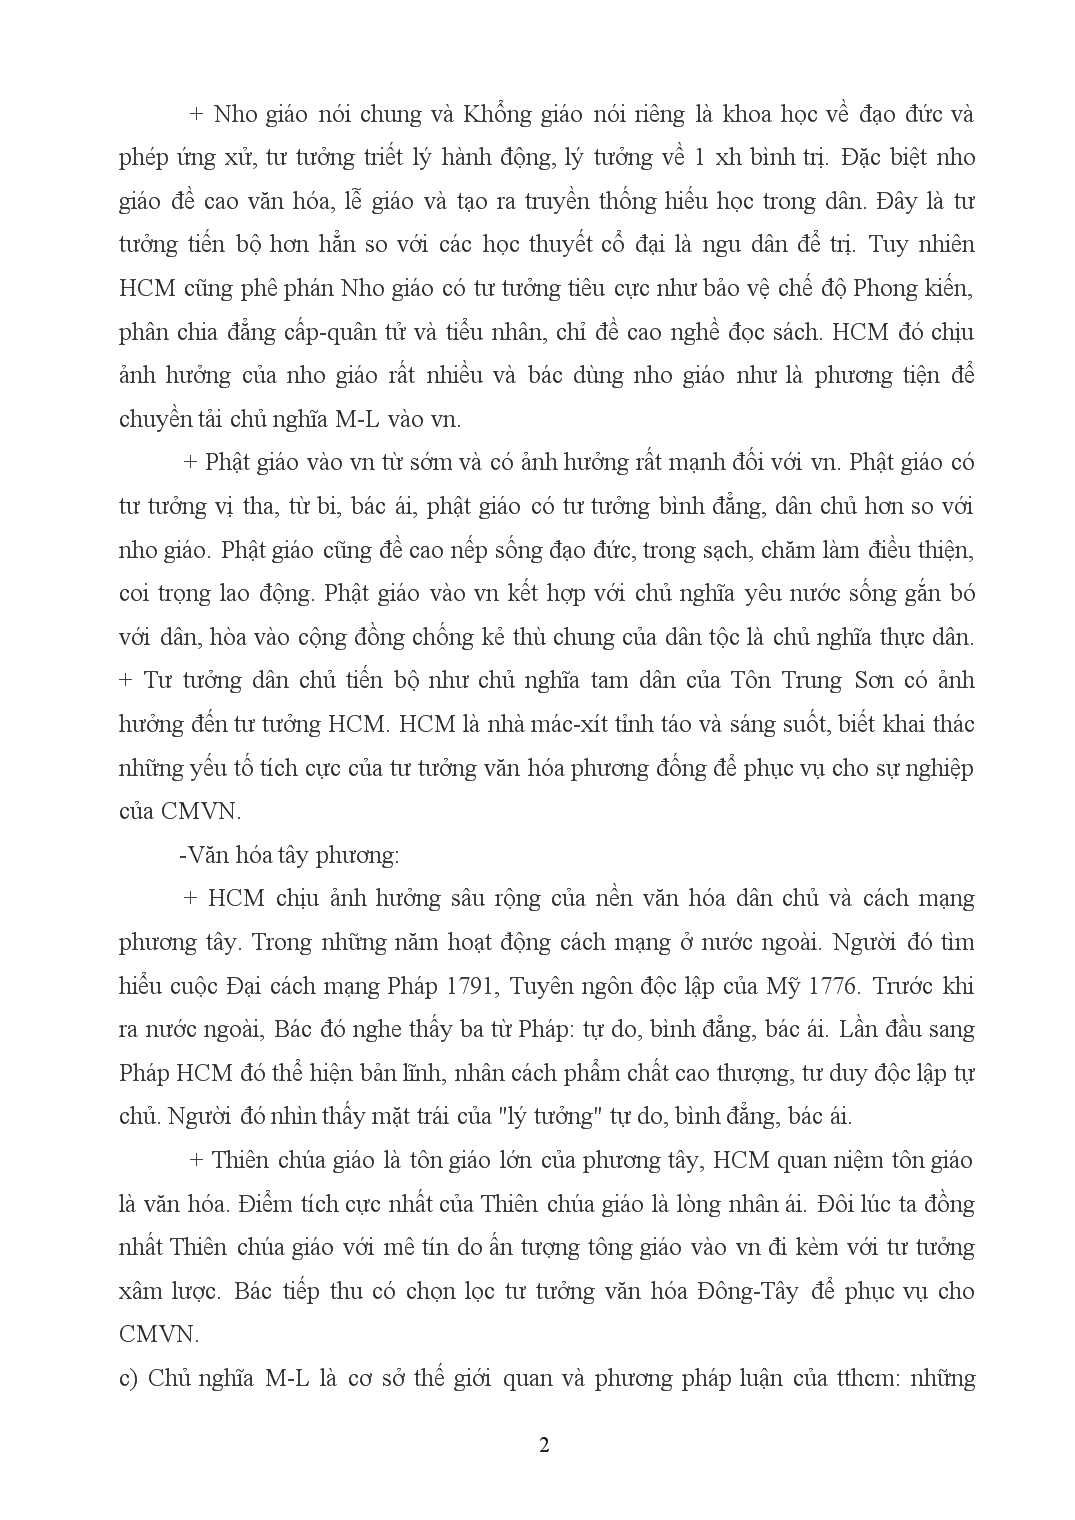 Nguồn gốc hình thành tư tưởng Hồ Chí Minh trang 2